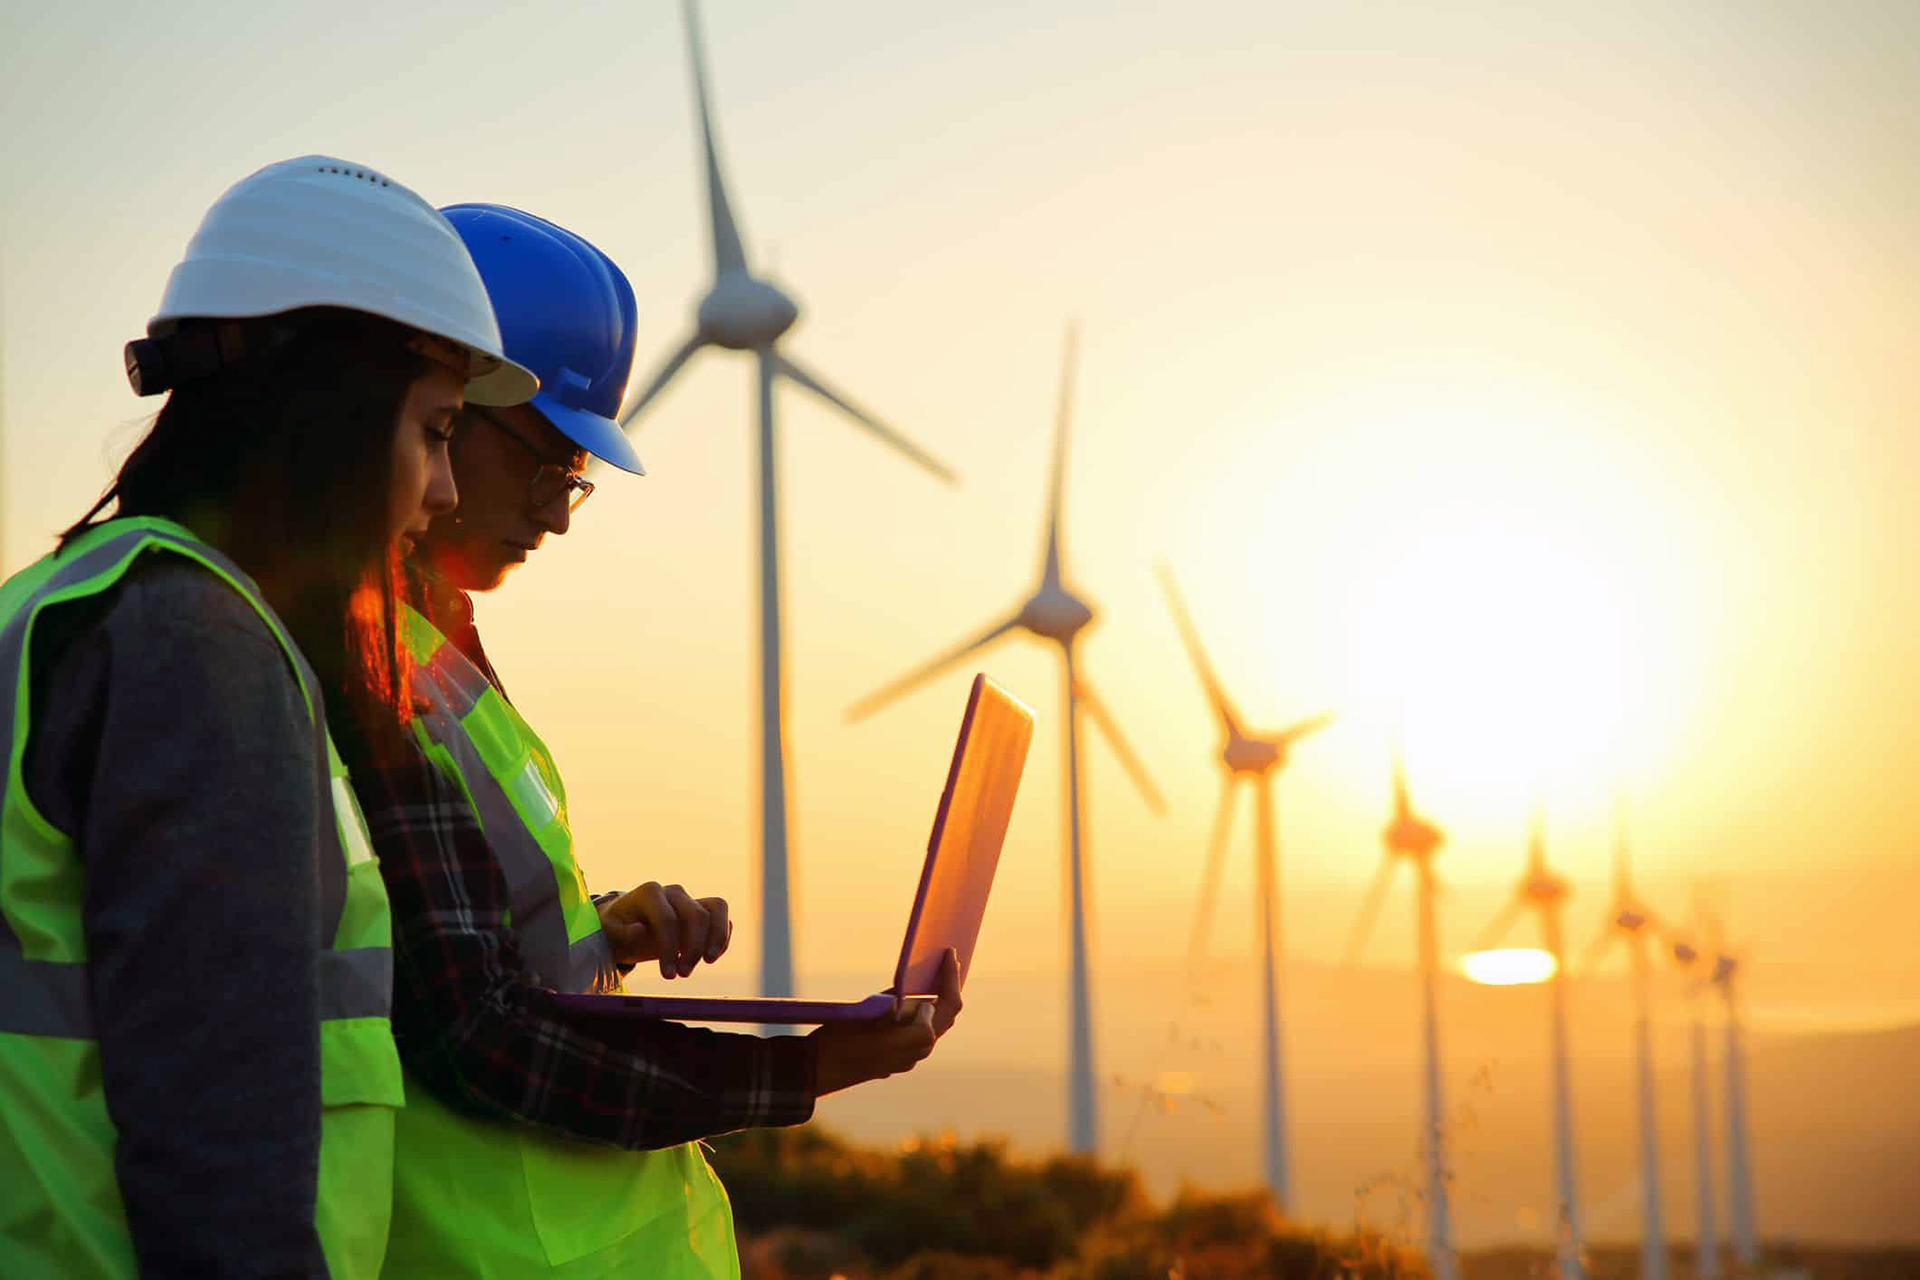 Inicie sua carreira em uma multinacional de energia renovável AES Corporation está com oportunidades para profissionais sem experiência